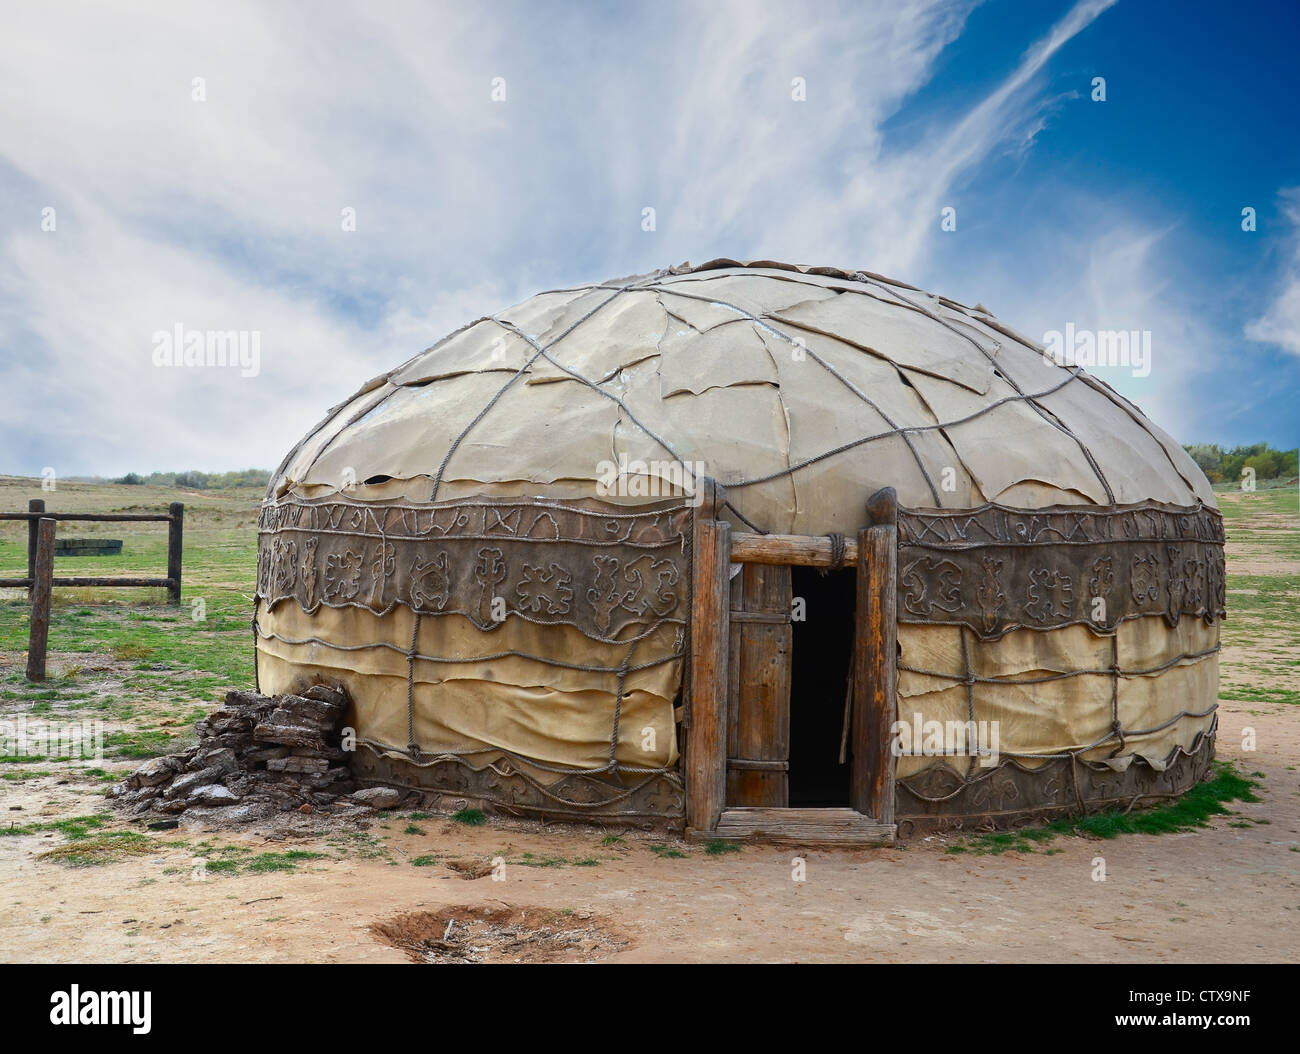 Traditionelle mongolische Jurte von Tierhäuten gemacht Stockfoto